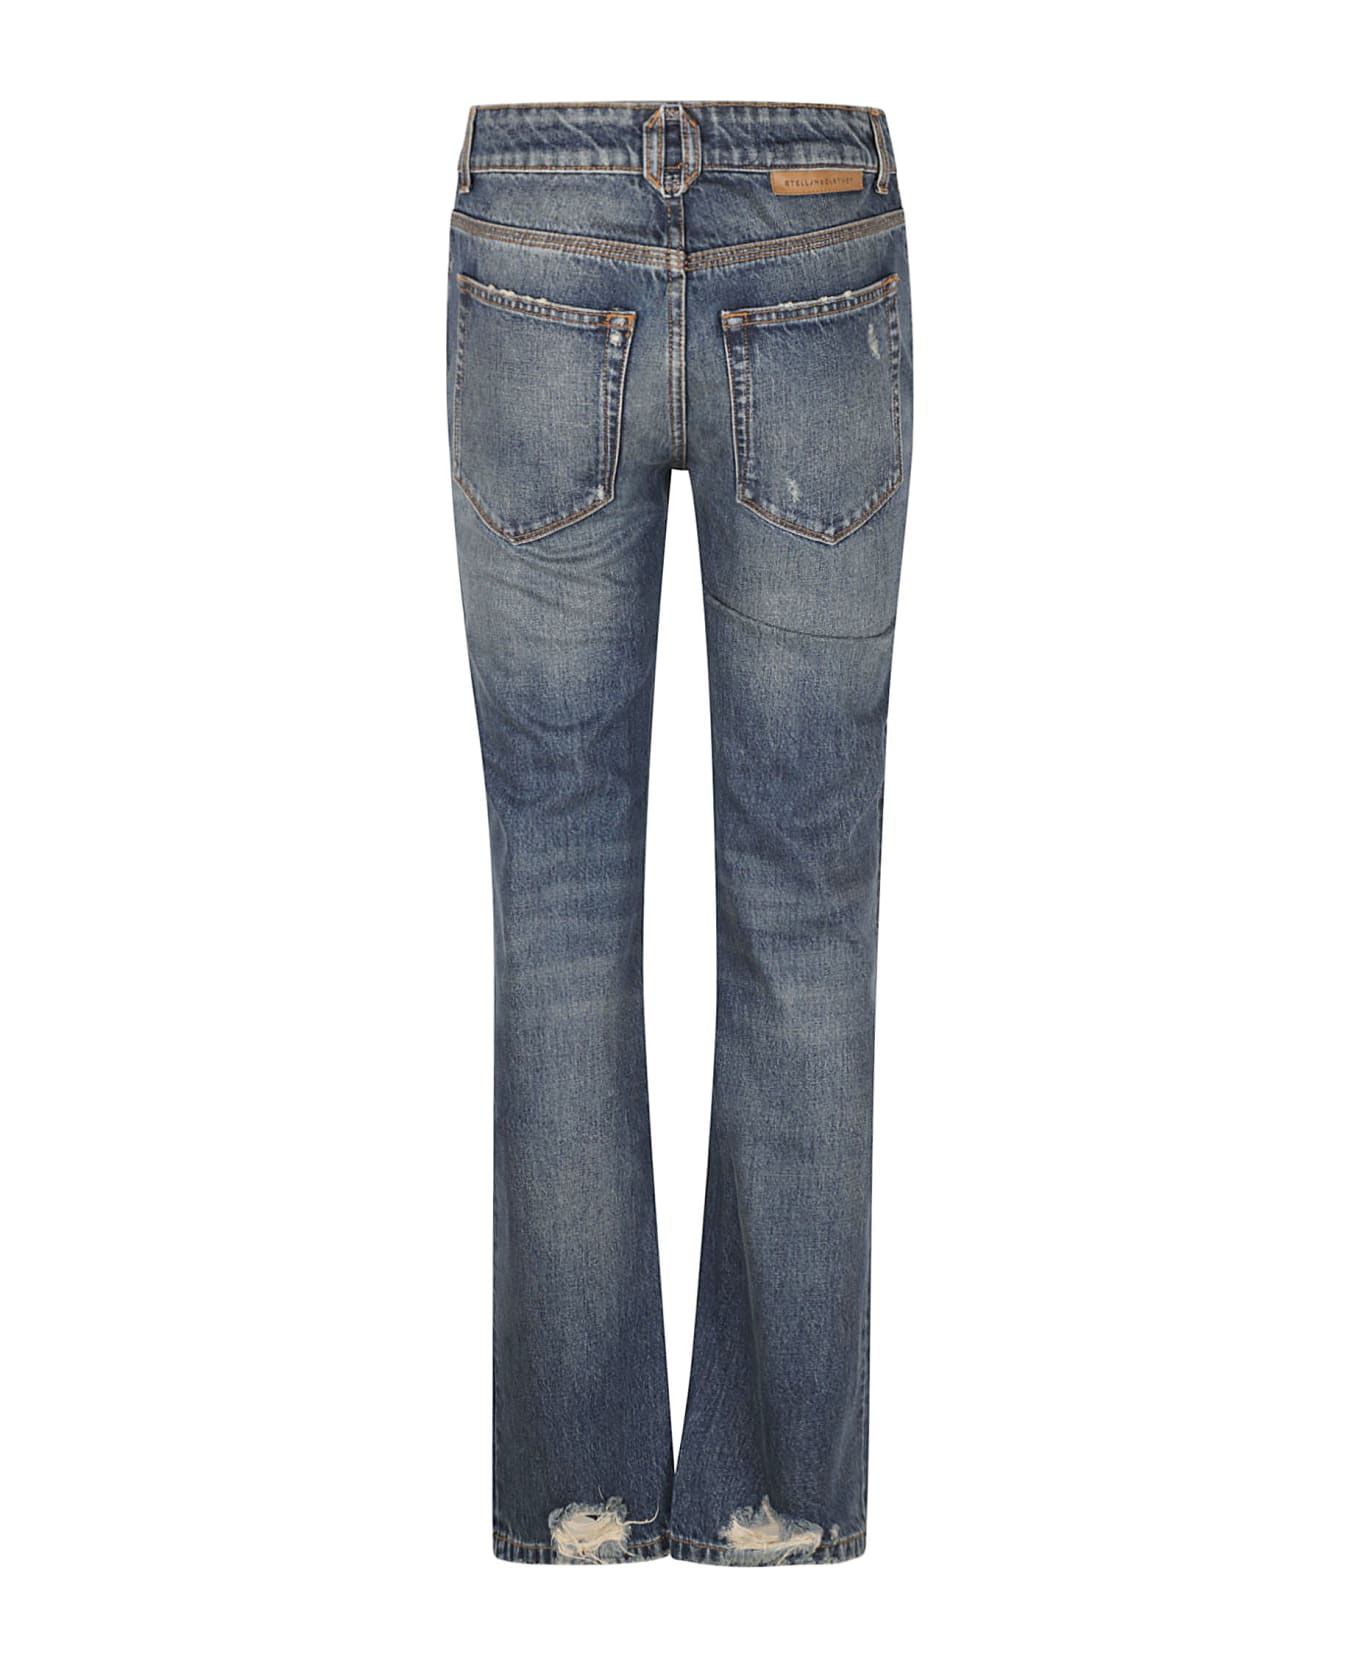 Stella McCartney Denim Zip Straight Jeans - VINTAGE BLUE